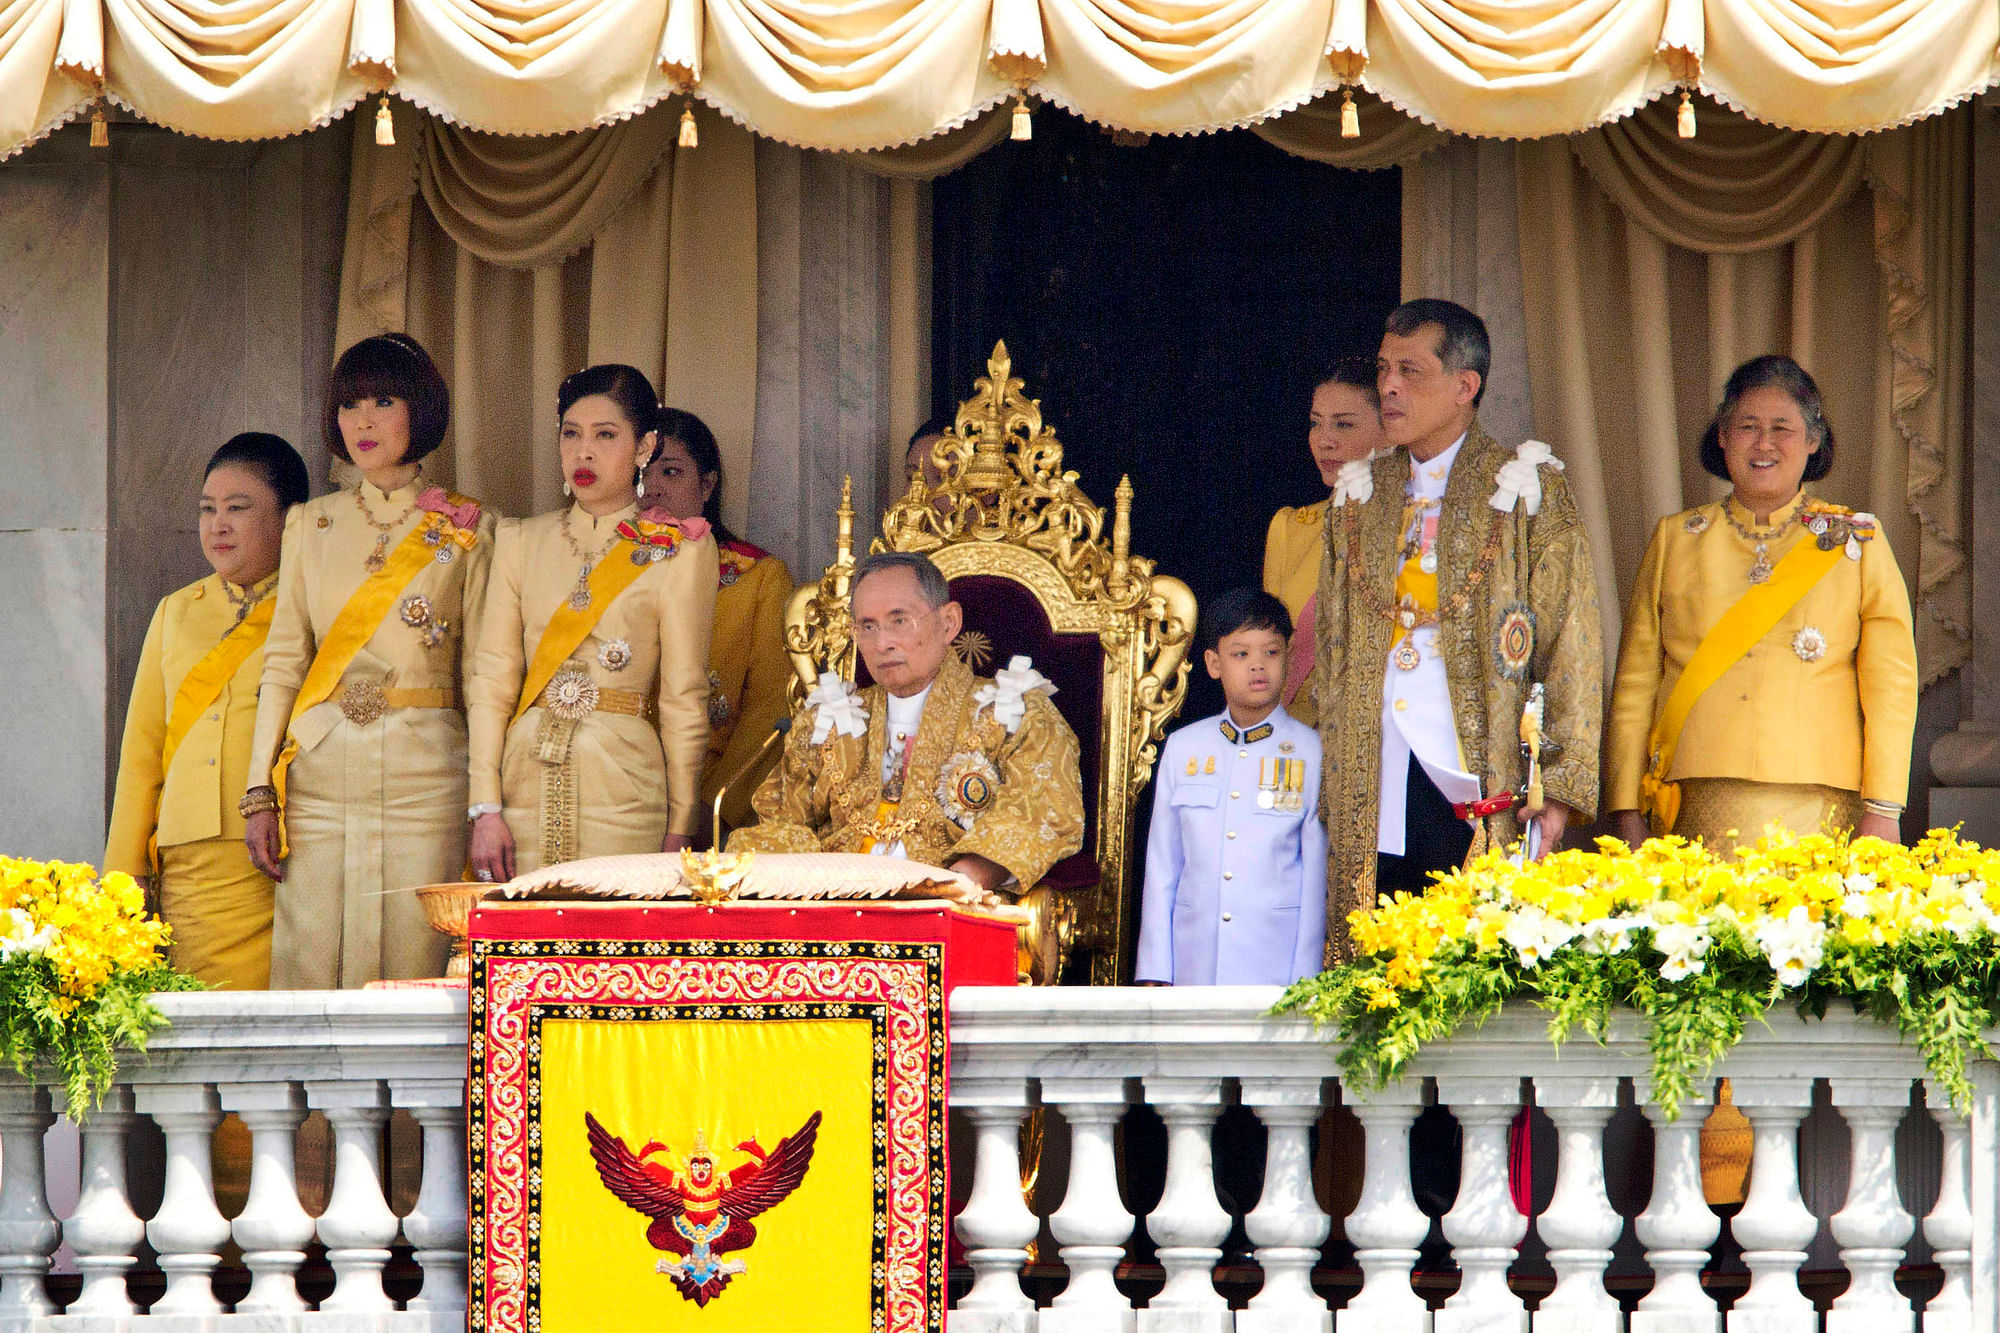 Thailand’s King Bhumibol World’s Longest Reigning Monarch Dies